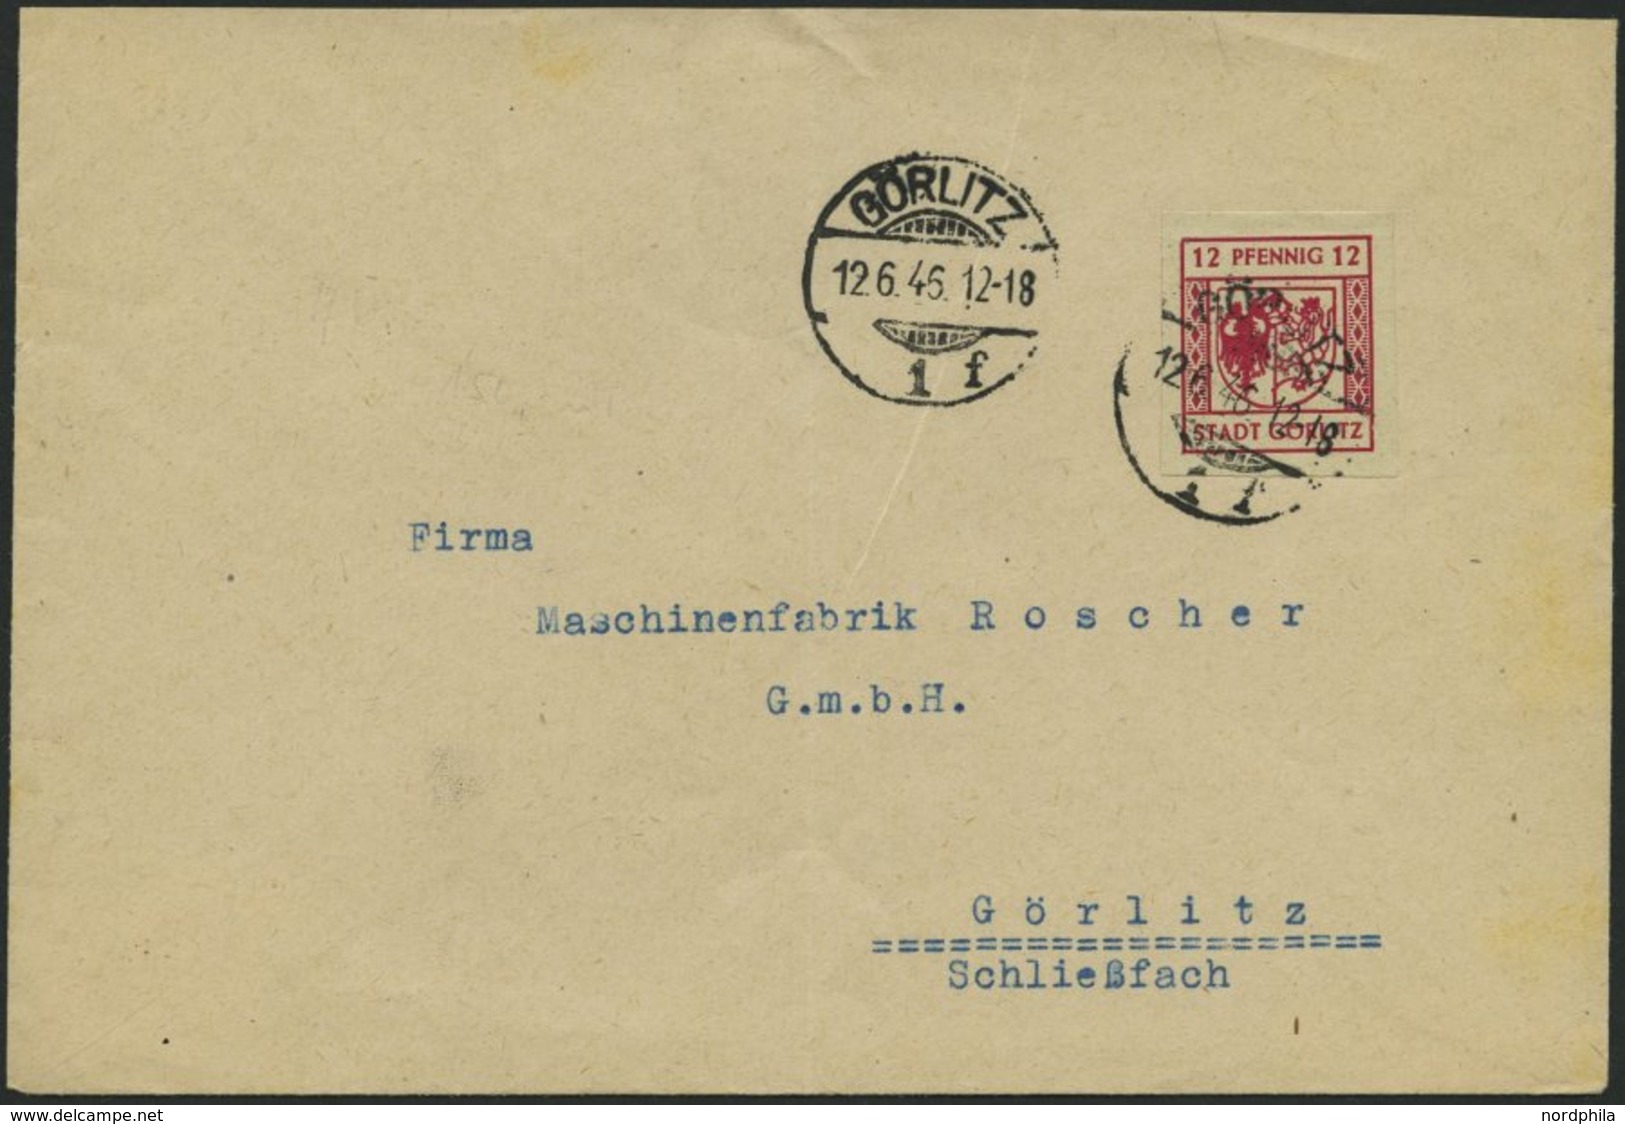 GÖRLITZ 4aU BRIEF, 1946, 12 Pf. Lilarot, Graues Papier, Ungezähnt, Prachtbrief - Correos Privados & Locales